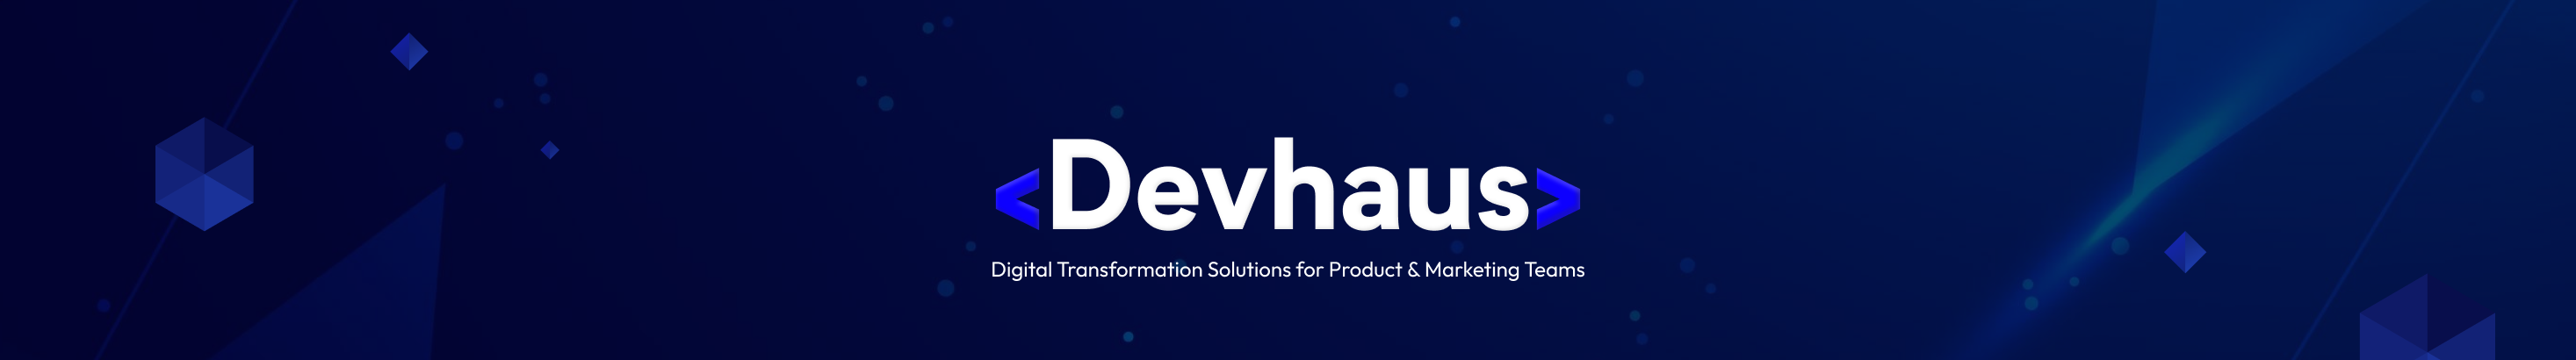 Devhaus pte's profile banner